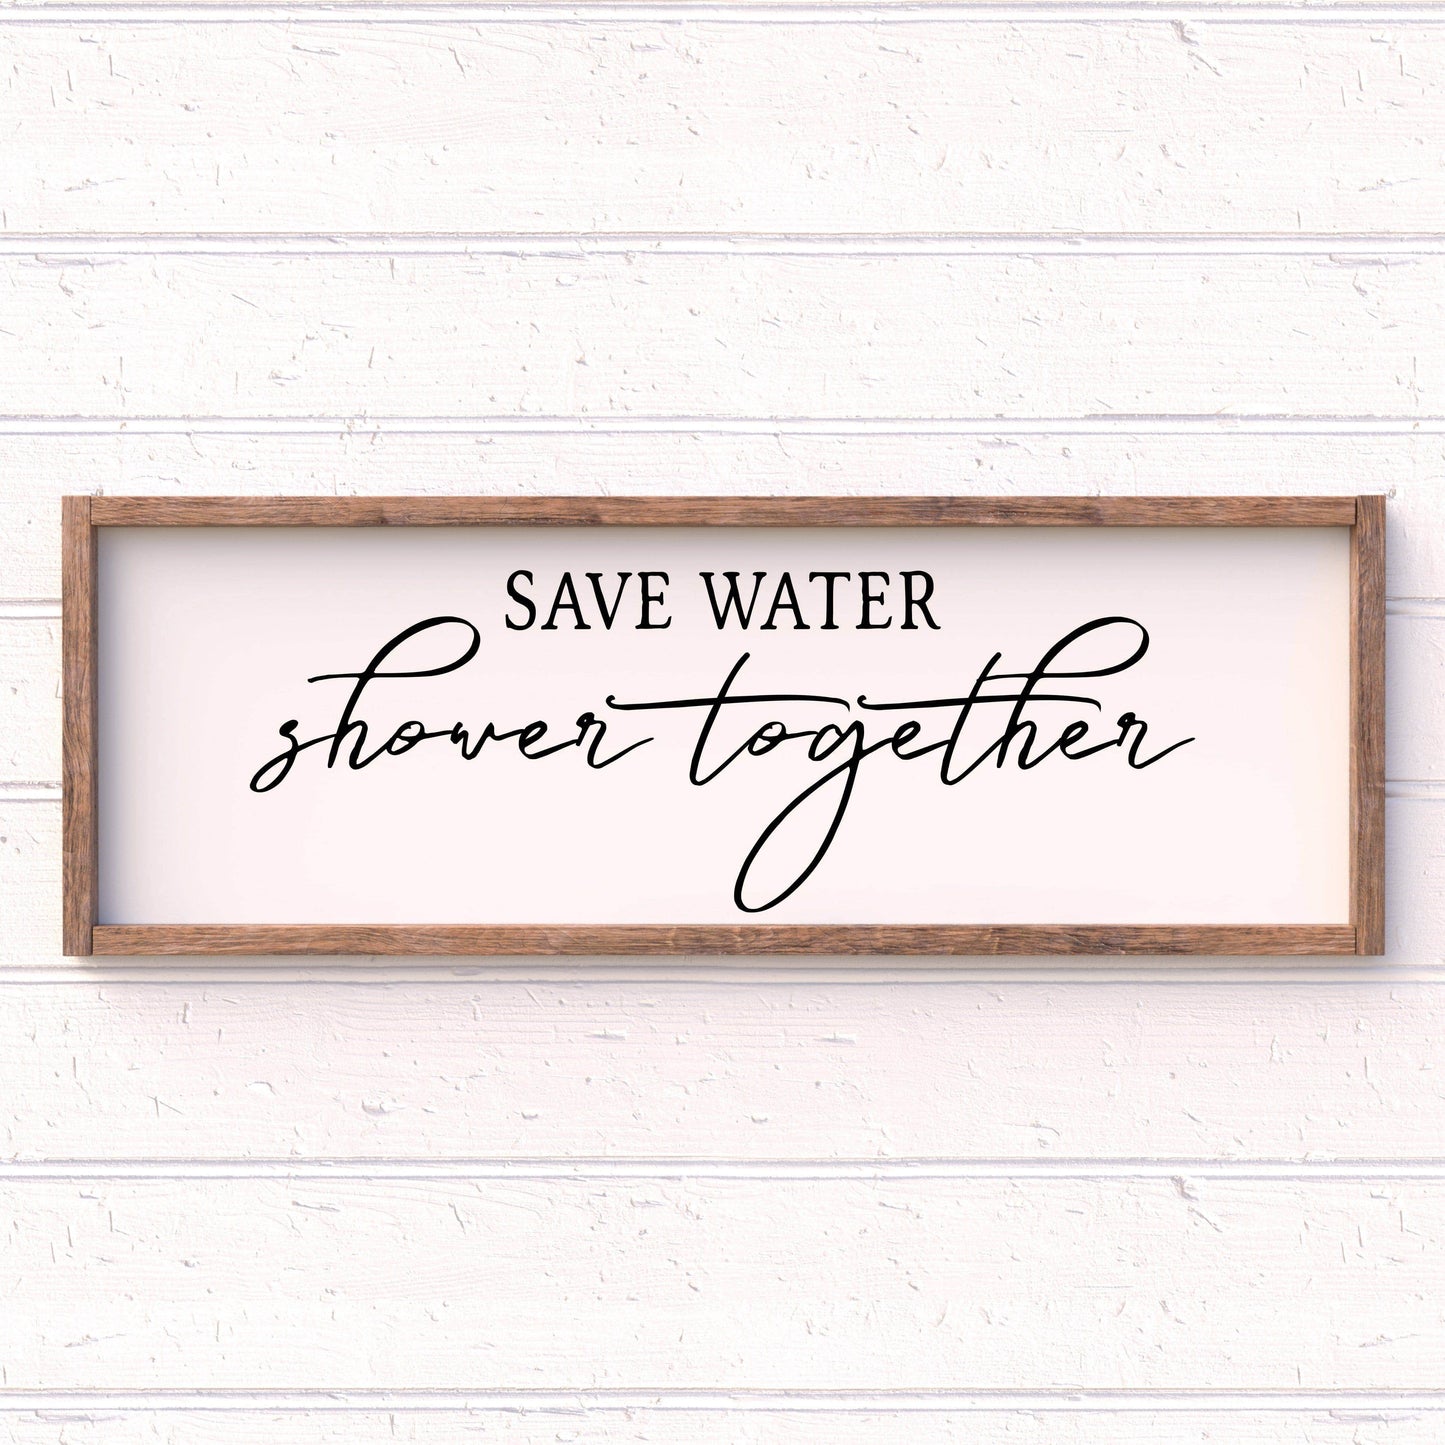 Save water, Shower Together -, framed bathroom wood sign, bathroom decor, home decor